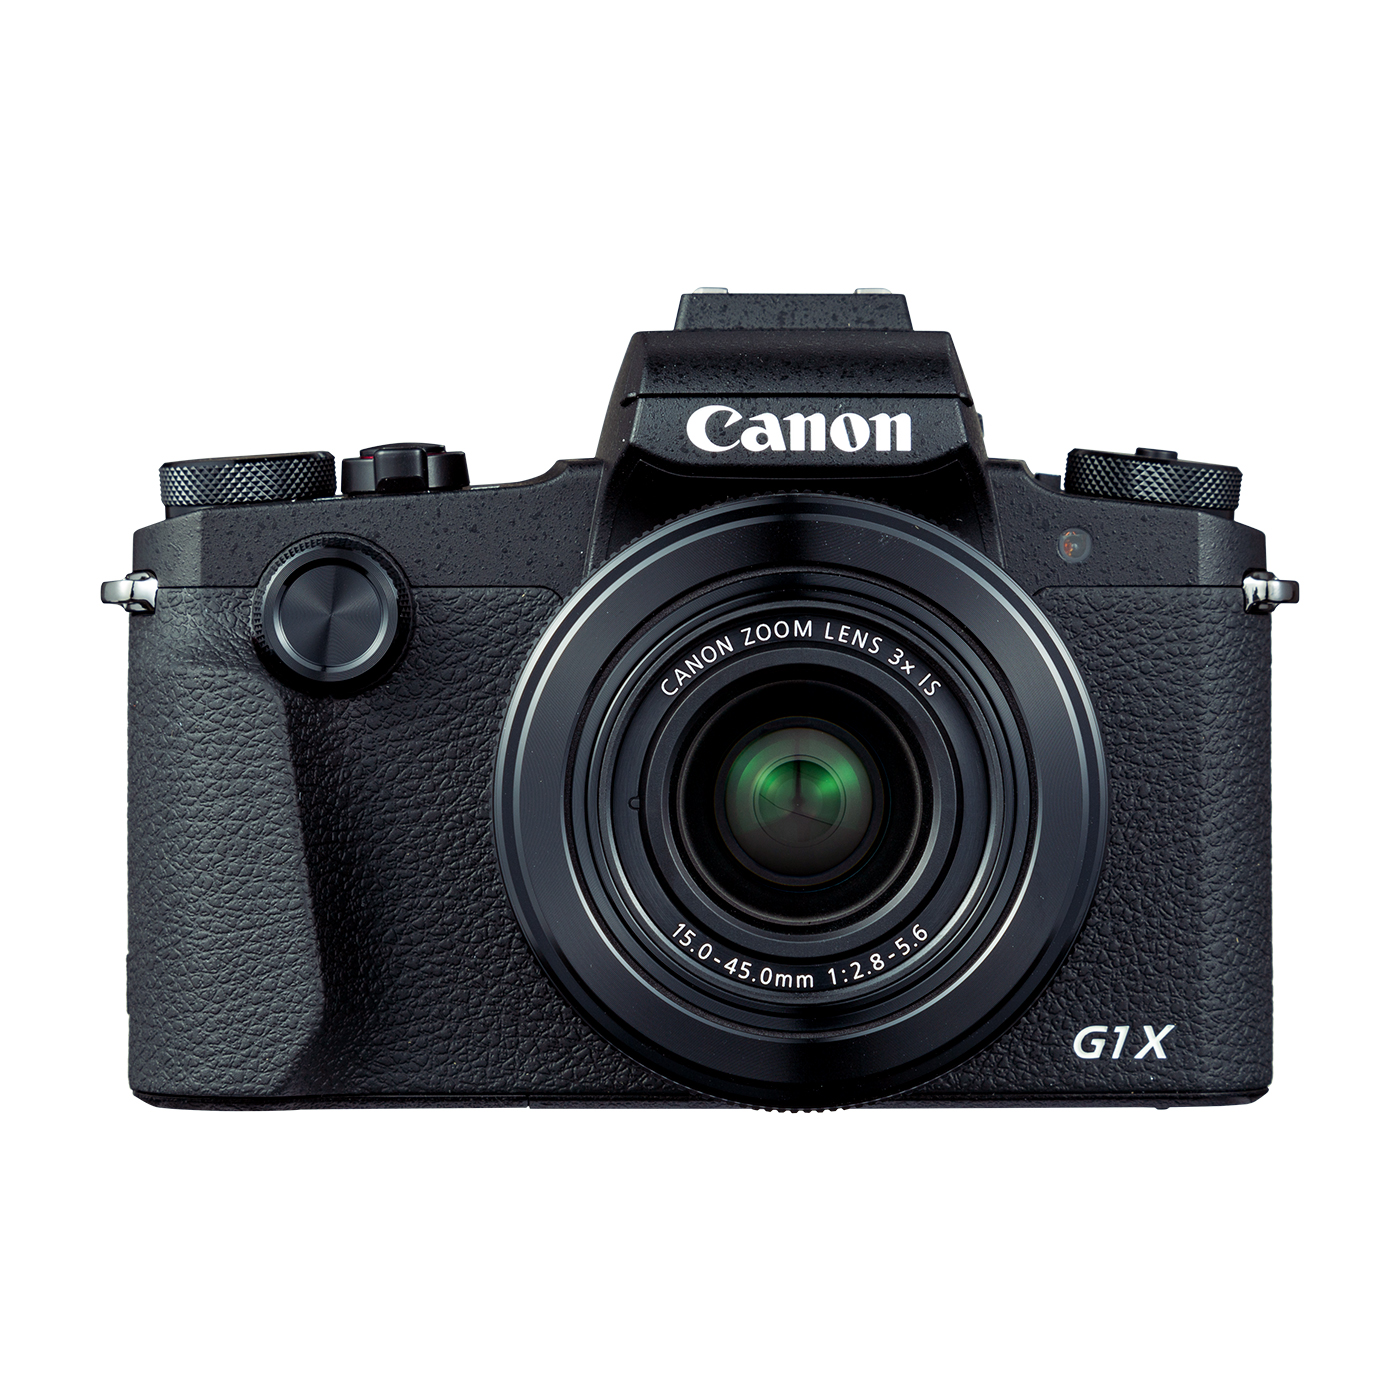 キヤノン キヤノン Canon PowerShot G1 X パワーショット コンパクトデジタルカメラ コンデジ カメラ